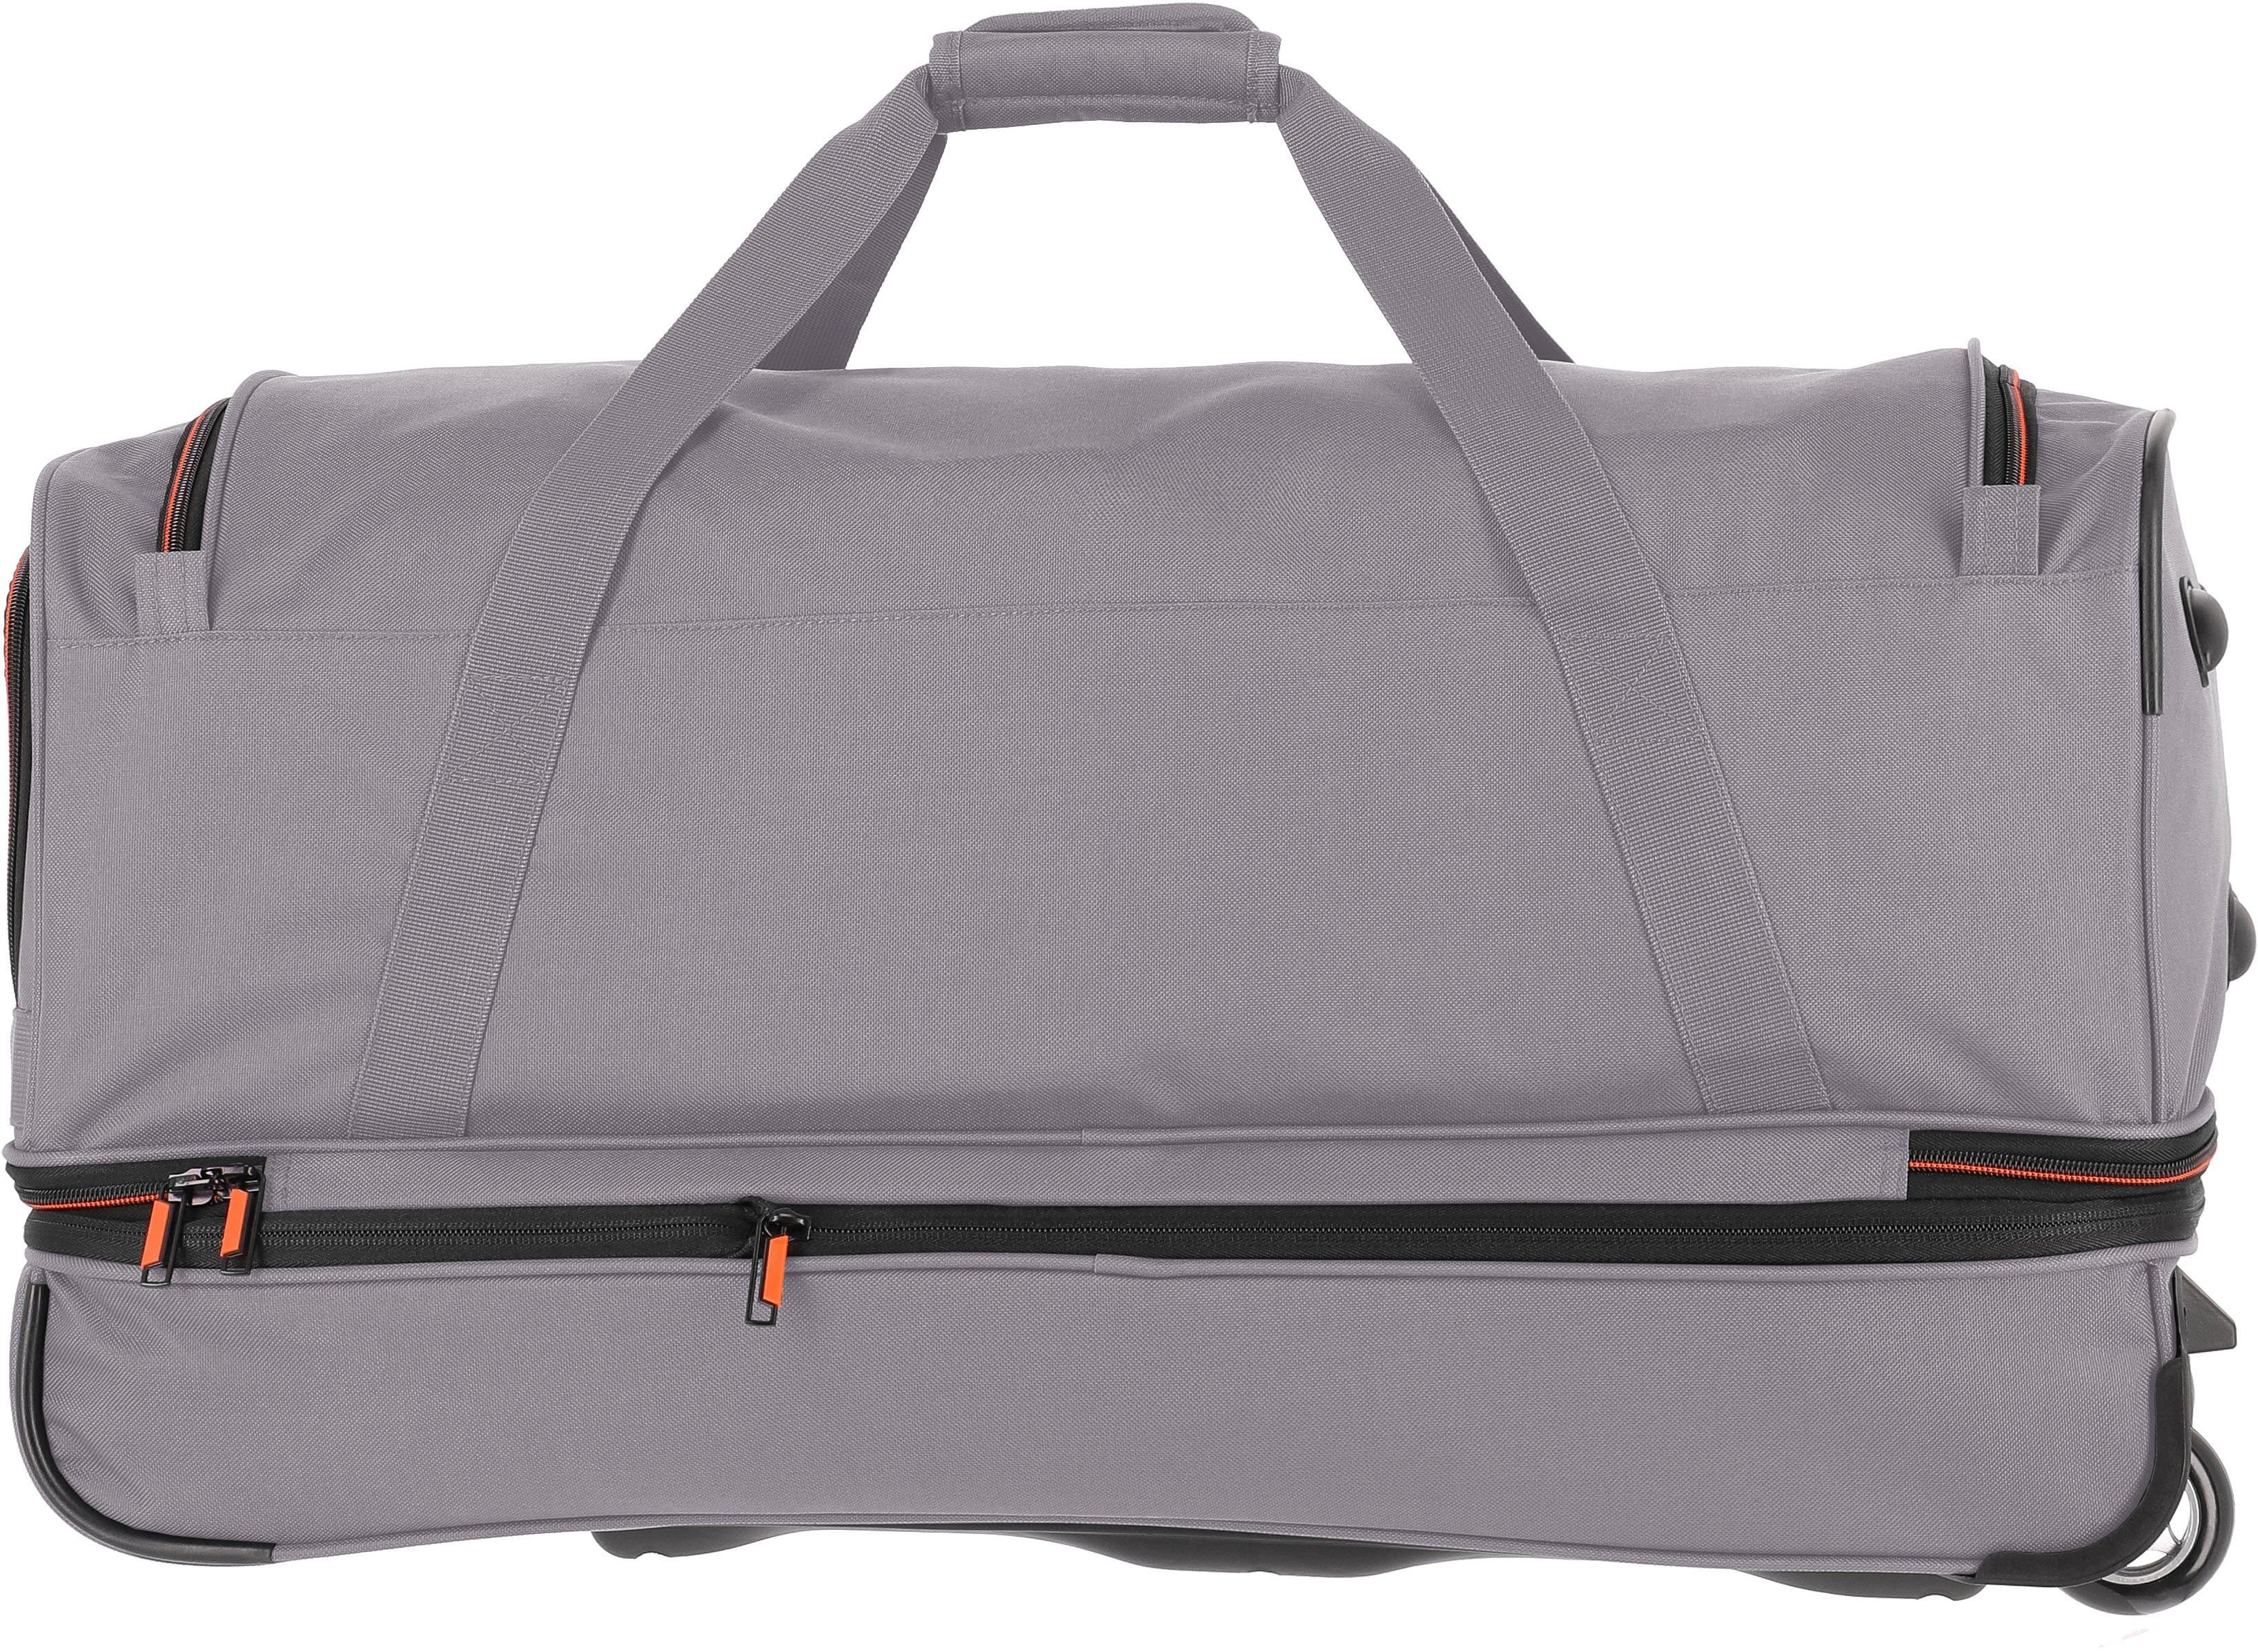 travelite Reisetasche Basics, Trolleyfunktion und grau/orange, cm, 70 mit Volumenerweiterung